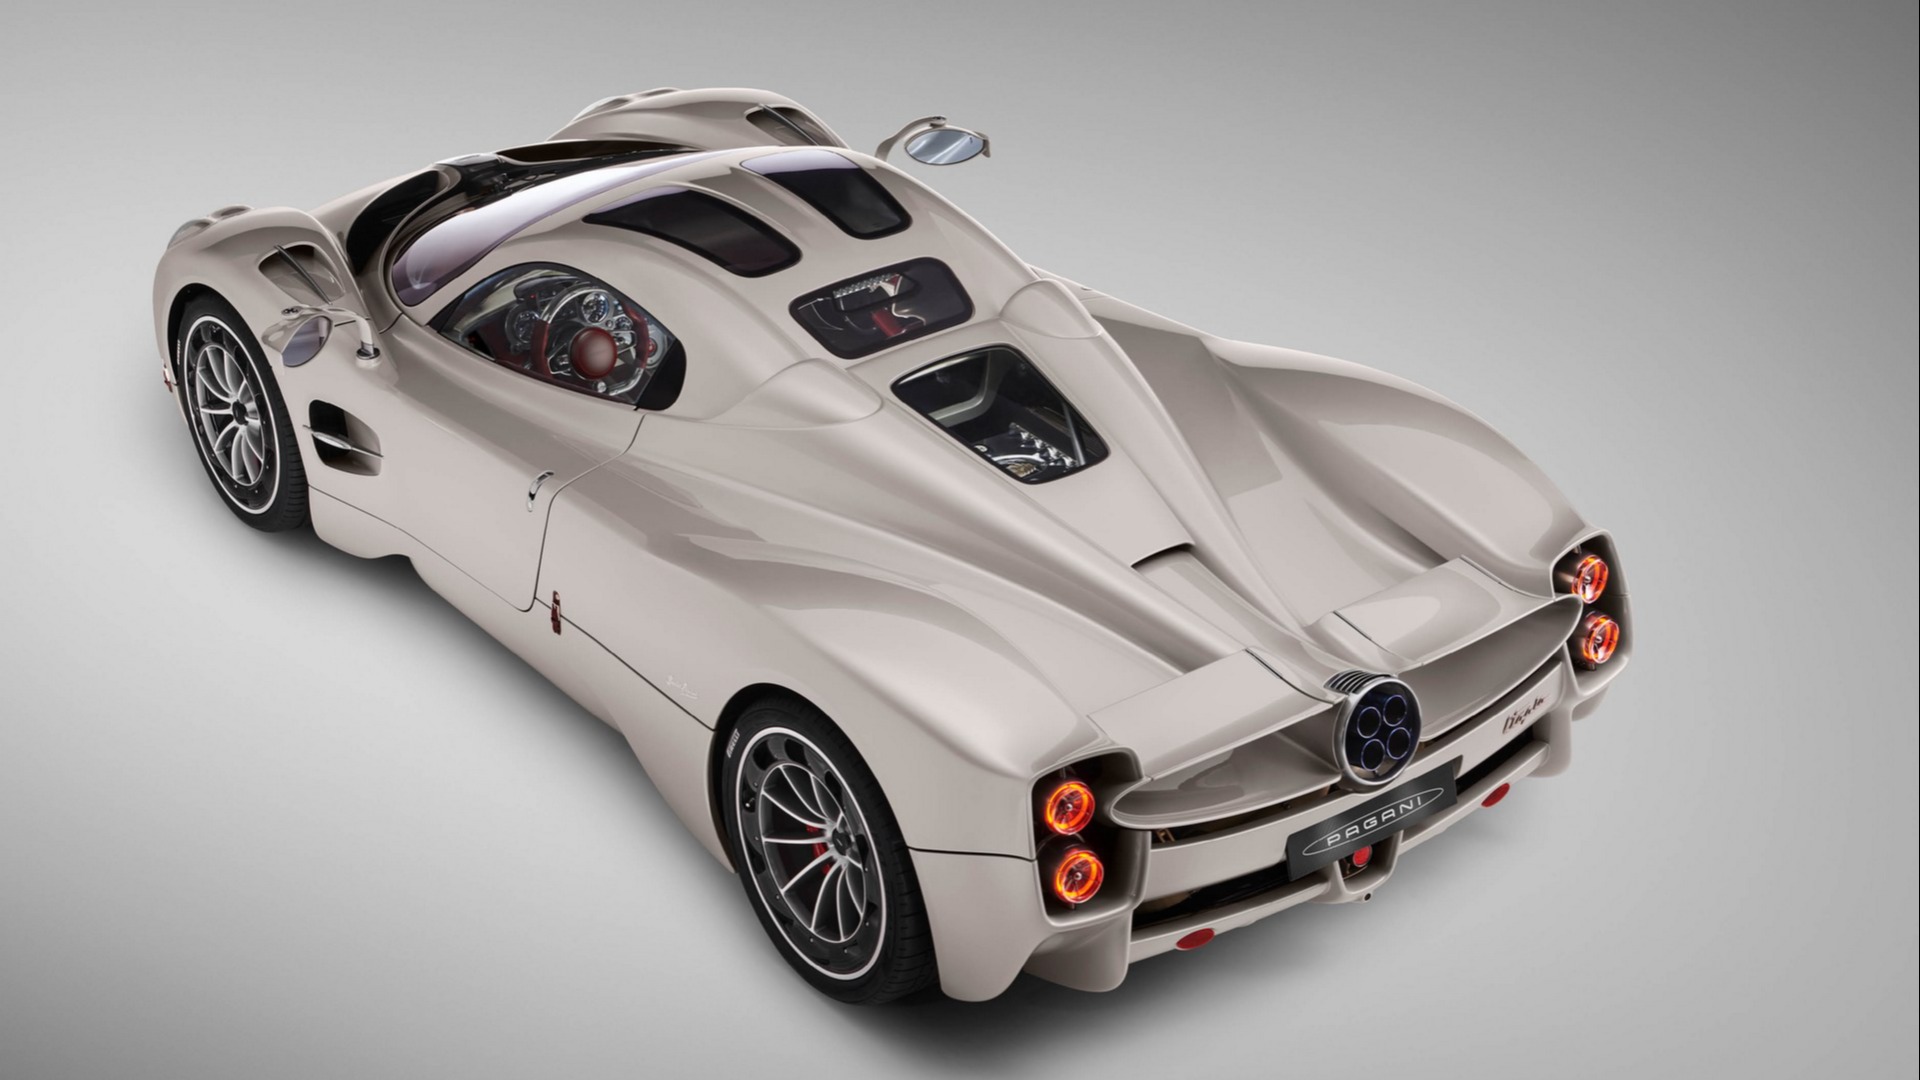 Med en prislapp på litt over 21 millioner kroner blir bilen Utopia for de fleste.